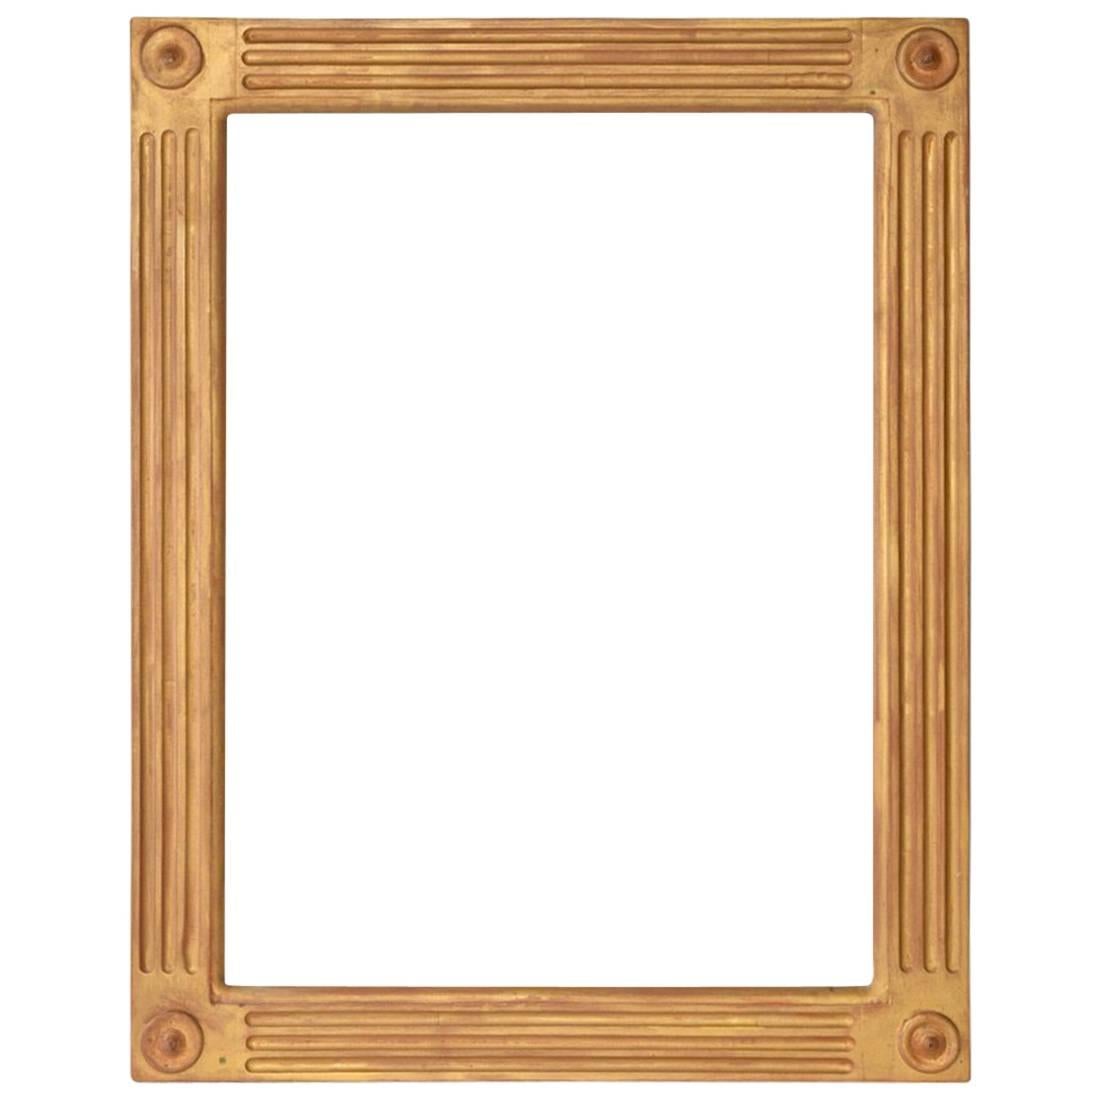 Spiegel oder Bilderrahmen im neoklassischen Stil